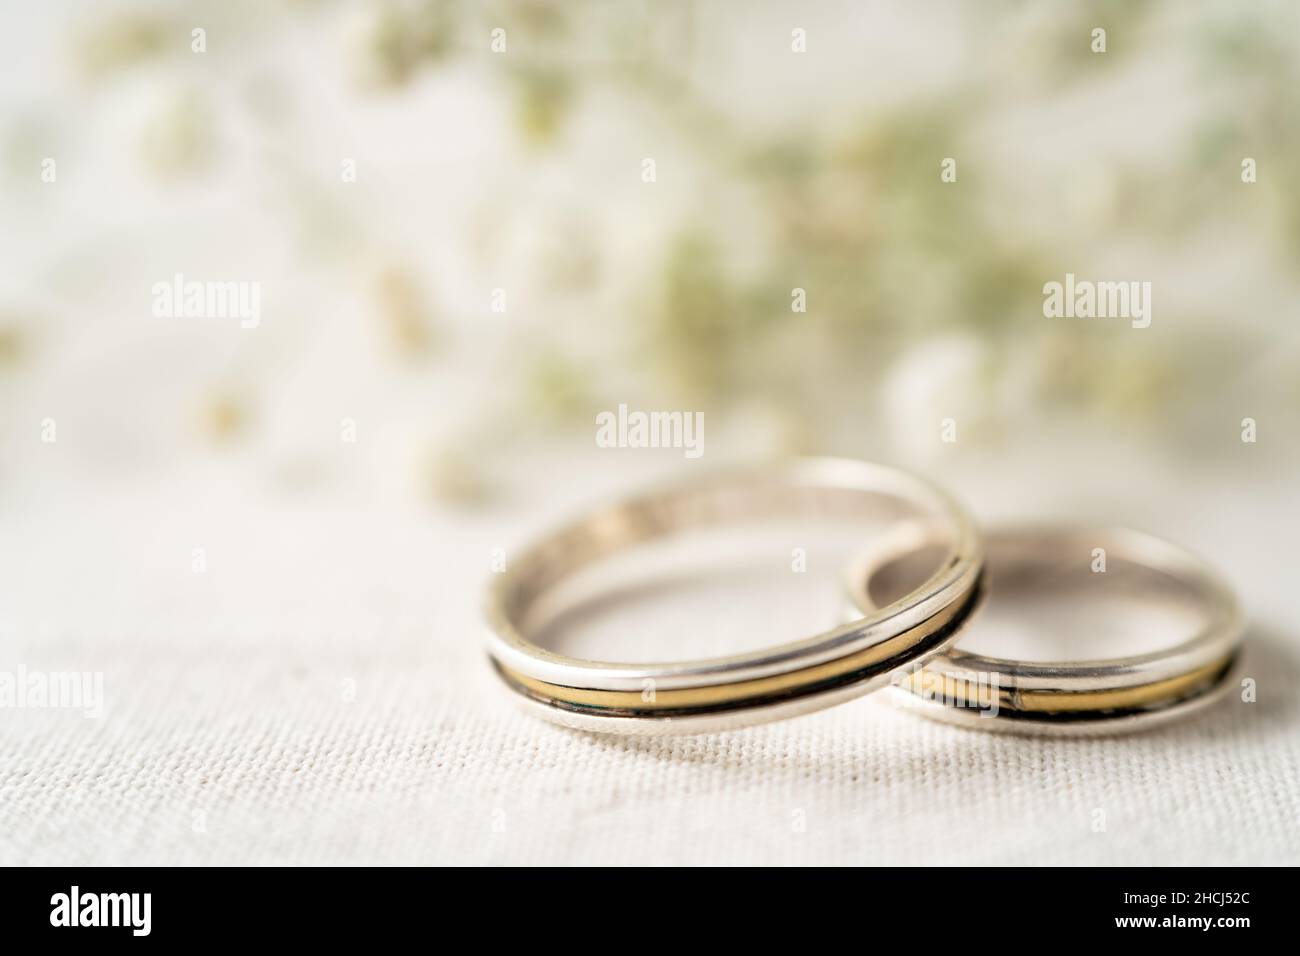 Ein Paar Eheringe auf einer weißen Oberfläche mit schönen weißen Blüten. Engagement und Liebe Konzept. Kopierbereich, differenzieller Fokus. Stockfoto